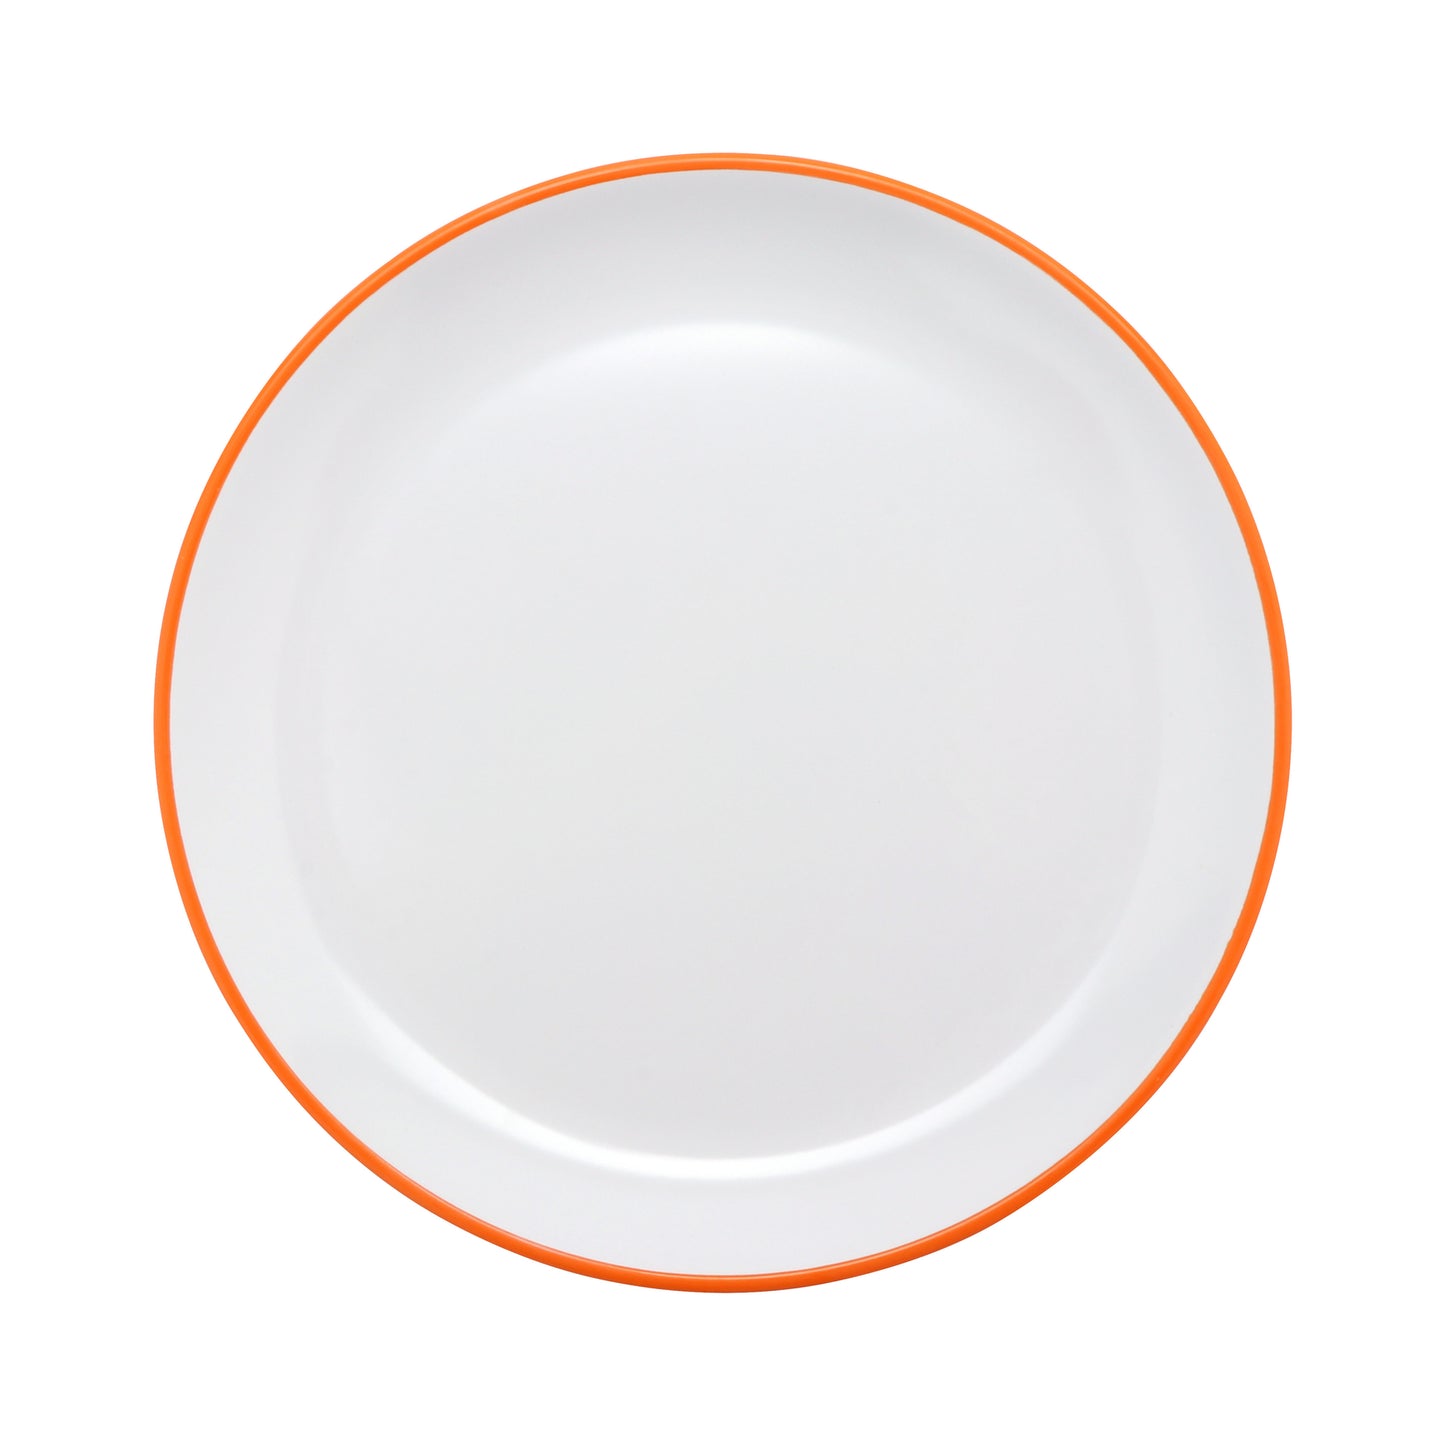 10.5" White Base with Orange Trim, Melamine Round Dinner Plate, G.E.T. Settlement Oasis (12 Pack)